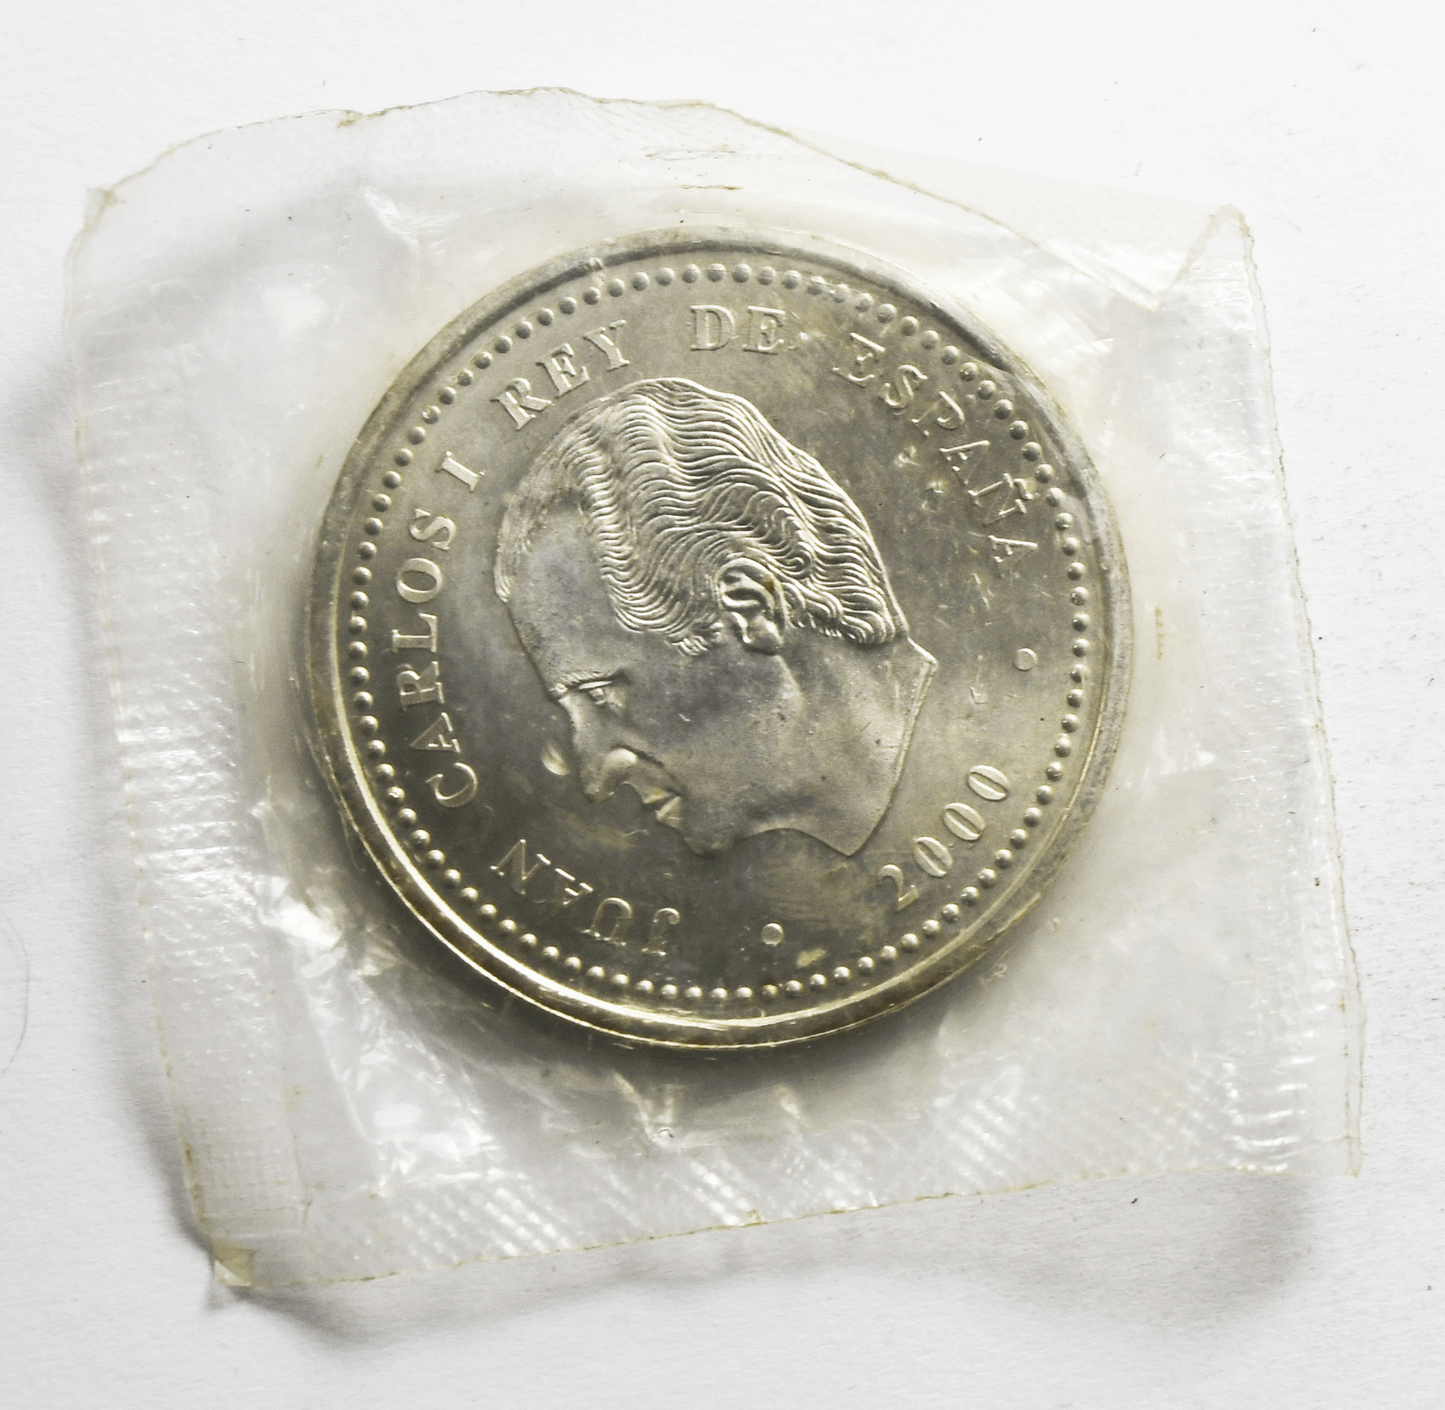 2000 Spain 2000 Pesetas Silver Coin BU Uncirculated in Package